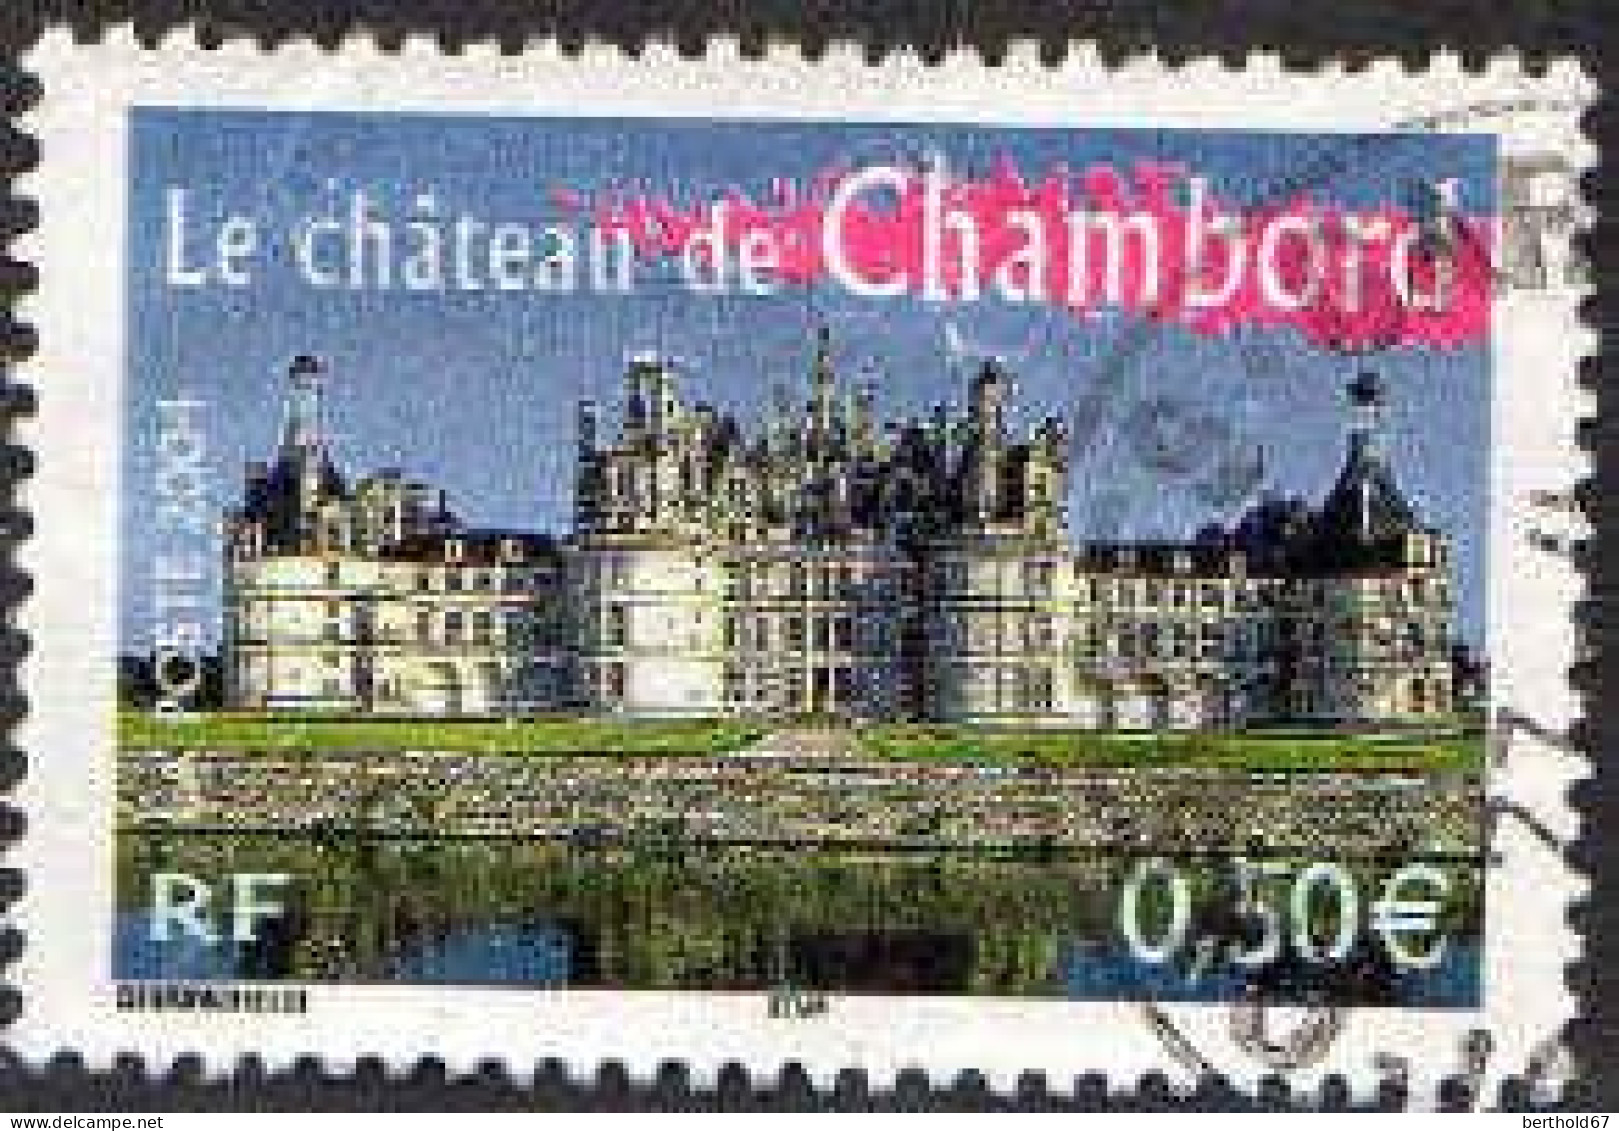 France Poste Obl Yv:3703 Le Château De Chambord (beau Cachet Rond) - Oblitérés